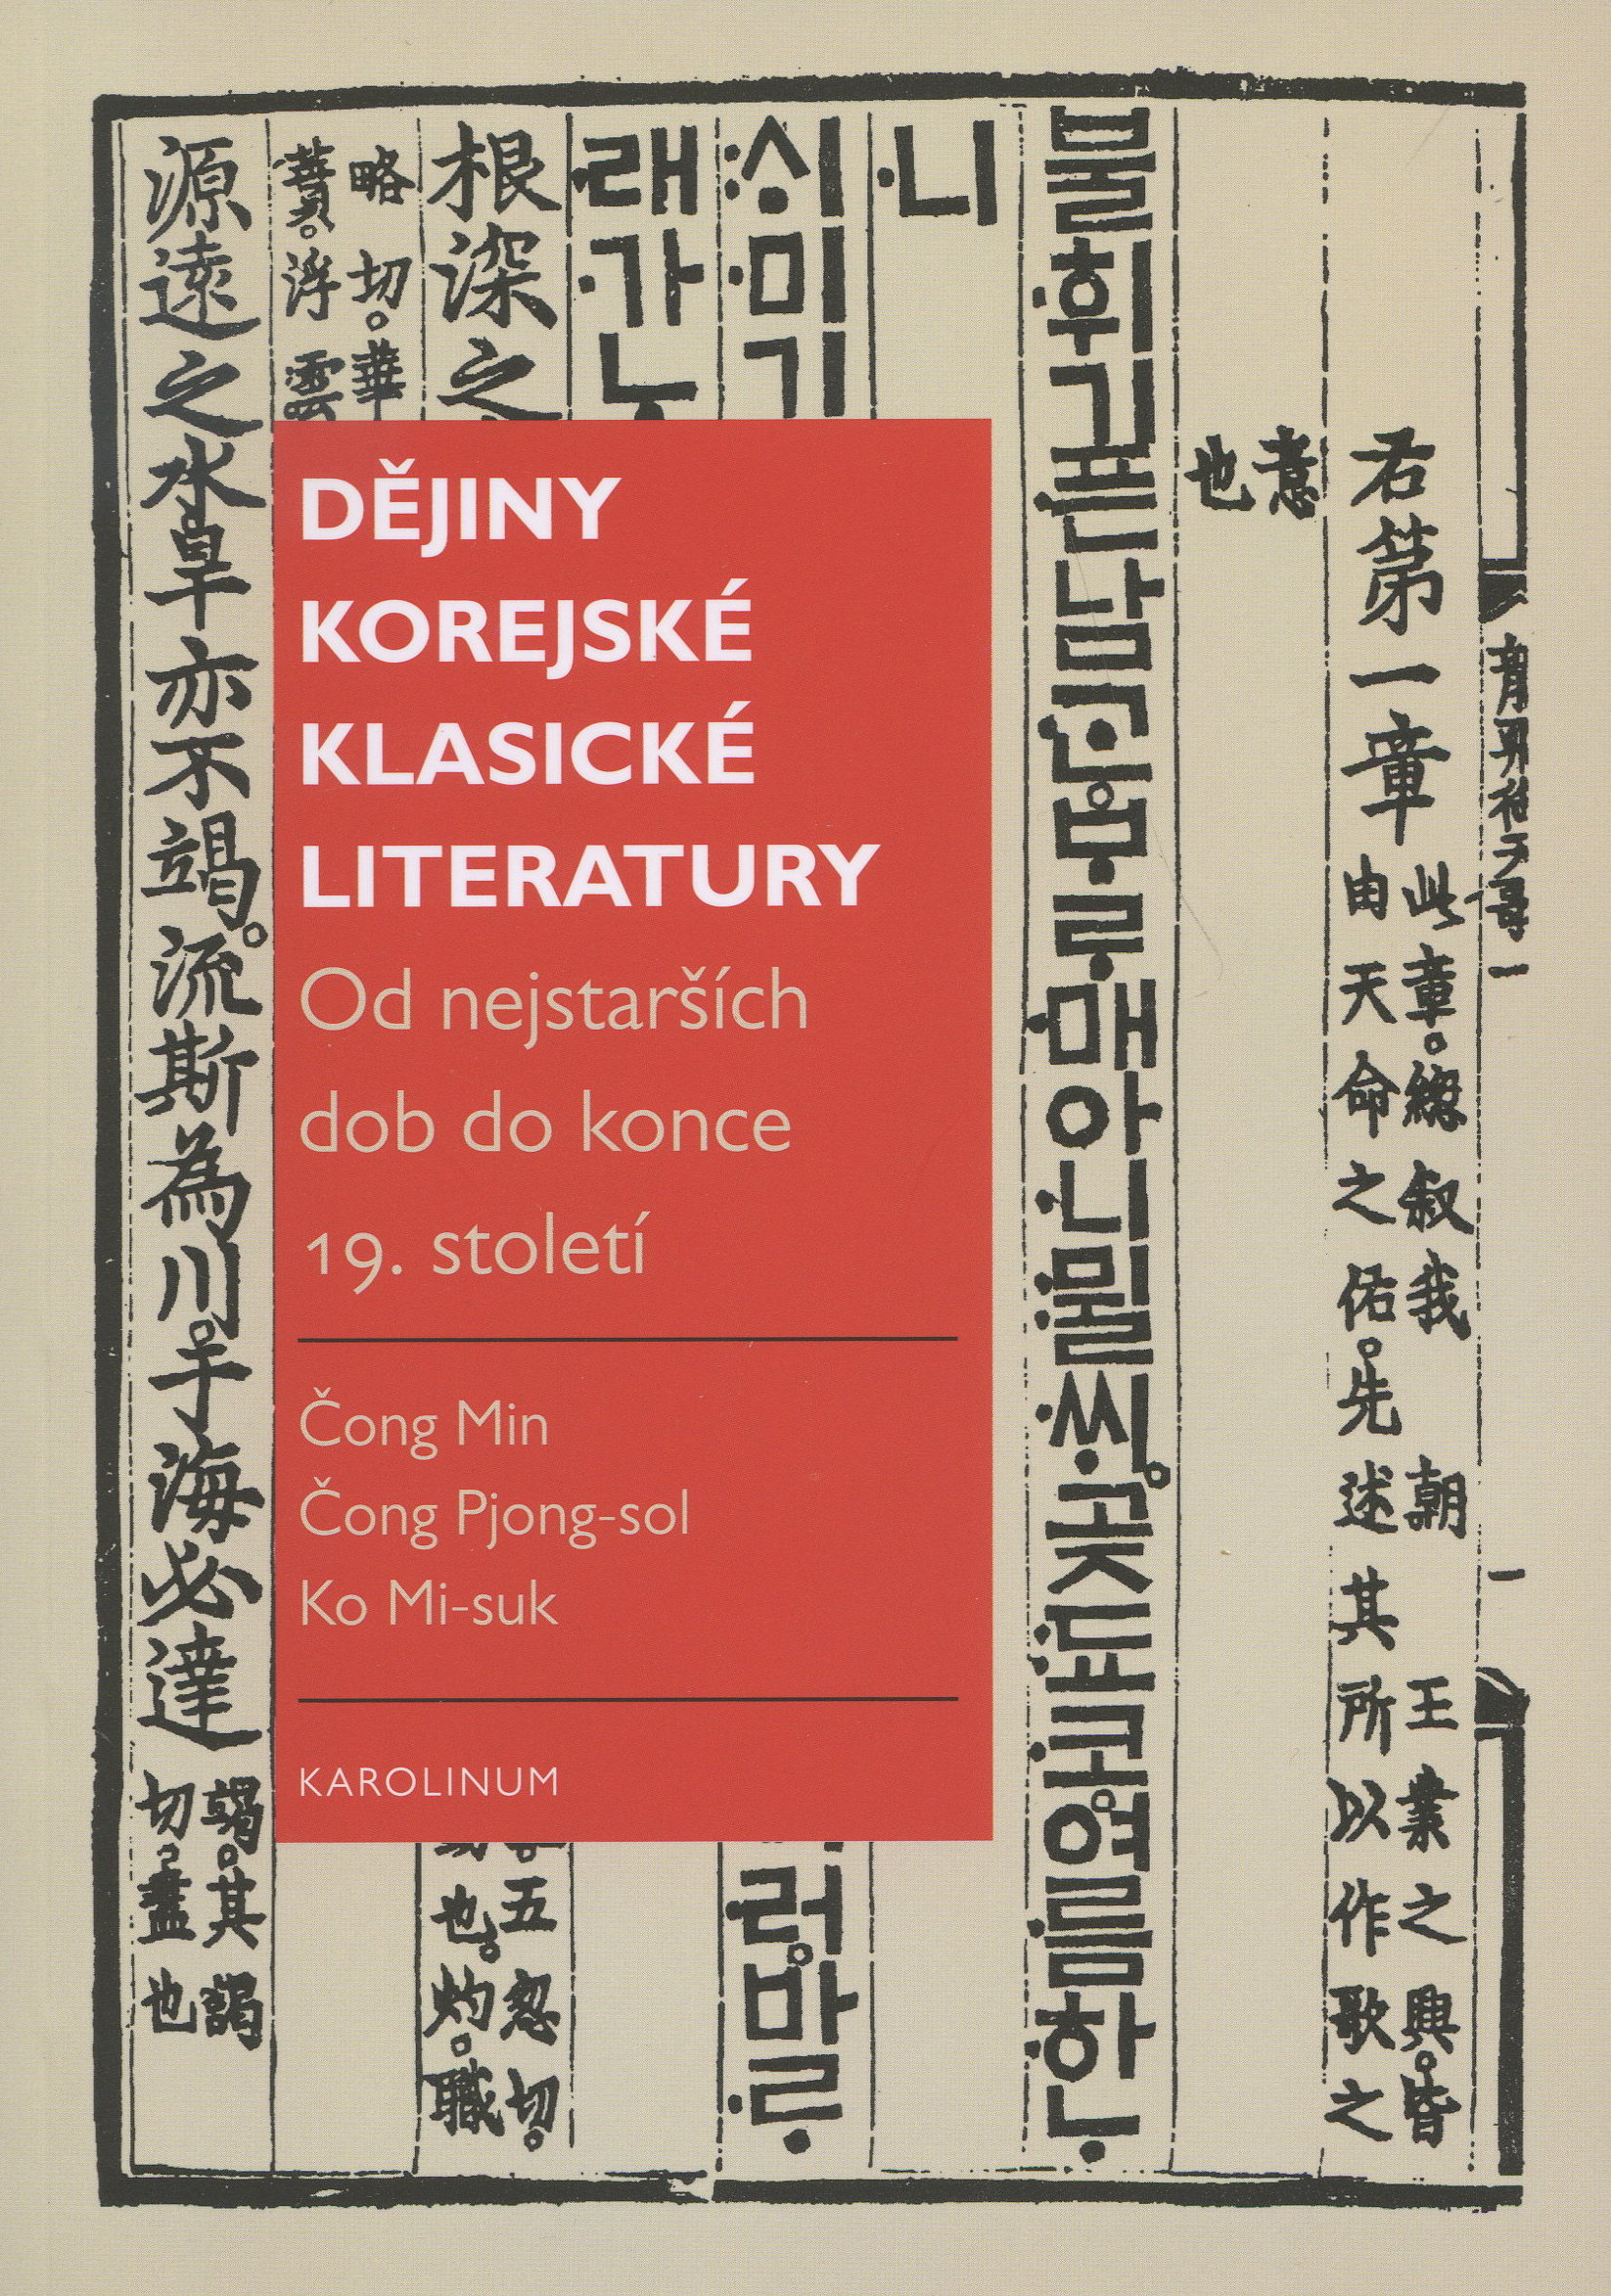 Dějiny korejské klasické literatury - Od nejstarších dob do konce 19. století